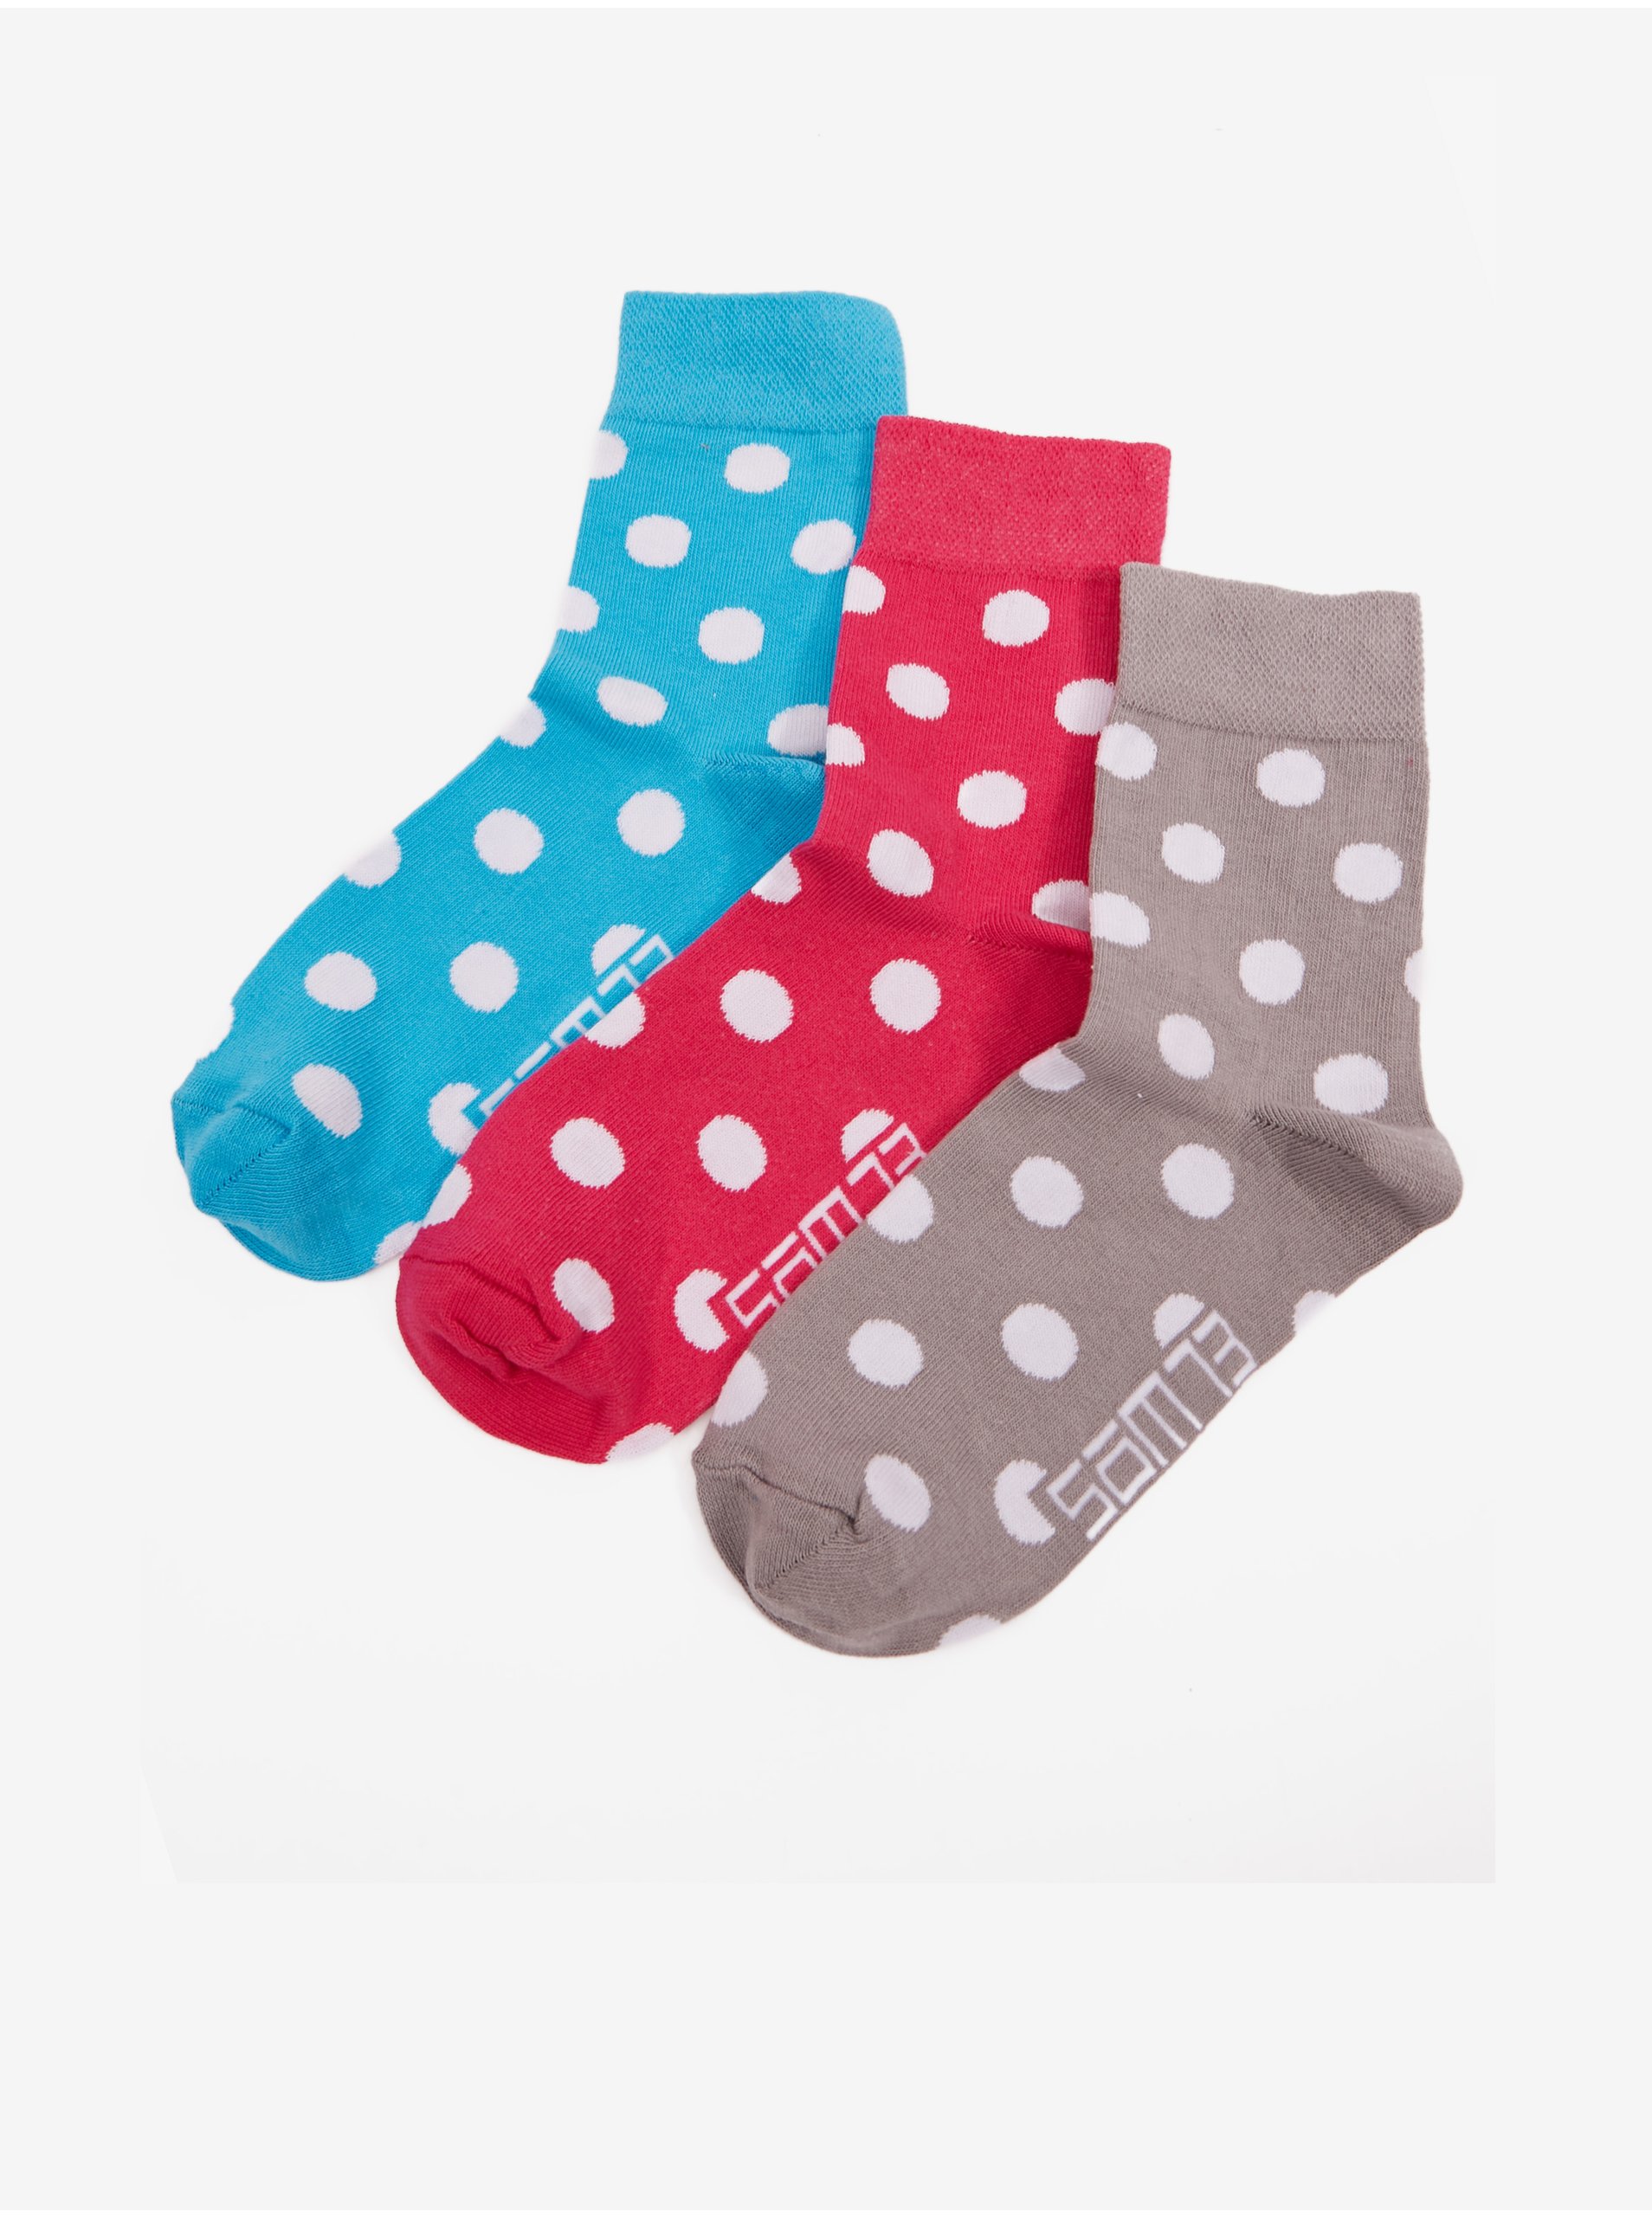 Lacno Súprava troch párov dámskych bodkovaných ponožiek v modrej, šedej a červenej farbe SAM 73